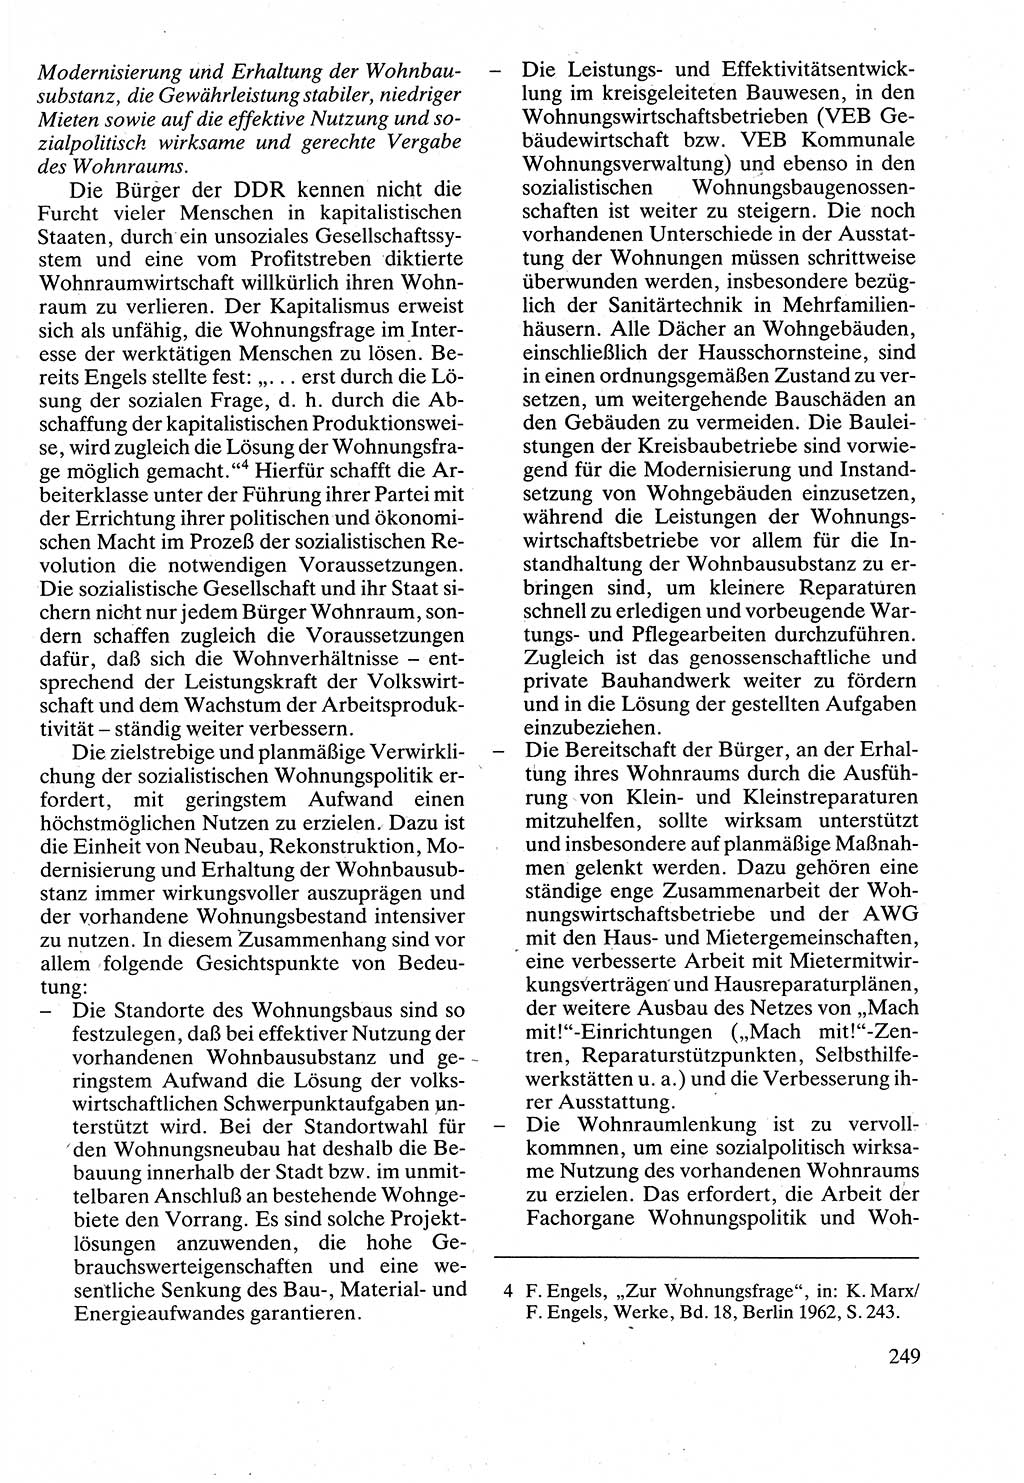 Verwaltungsrecht [Deutsche Demokratische Republik (DDR)], Lehrbuch 1988, Seite 249 (Verw.-R. DDR Lb. 1988, S. 249)